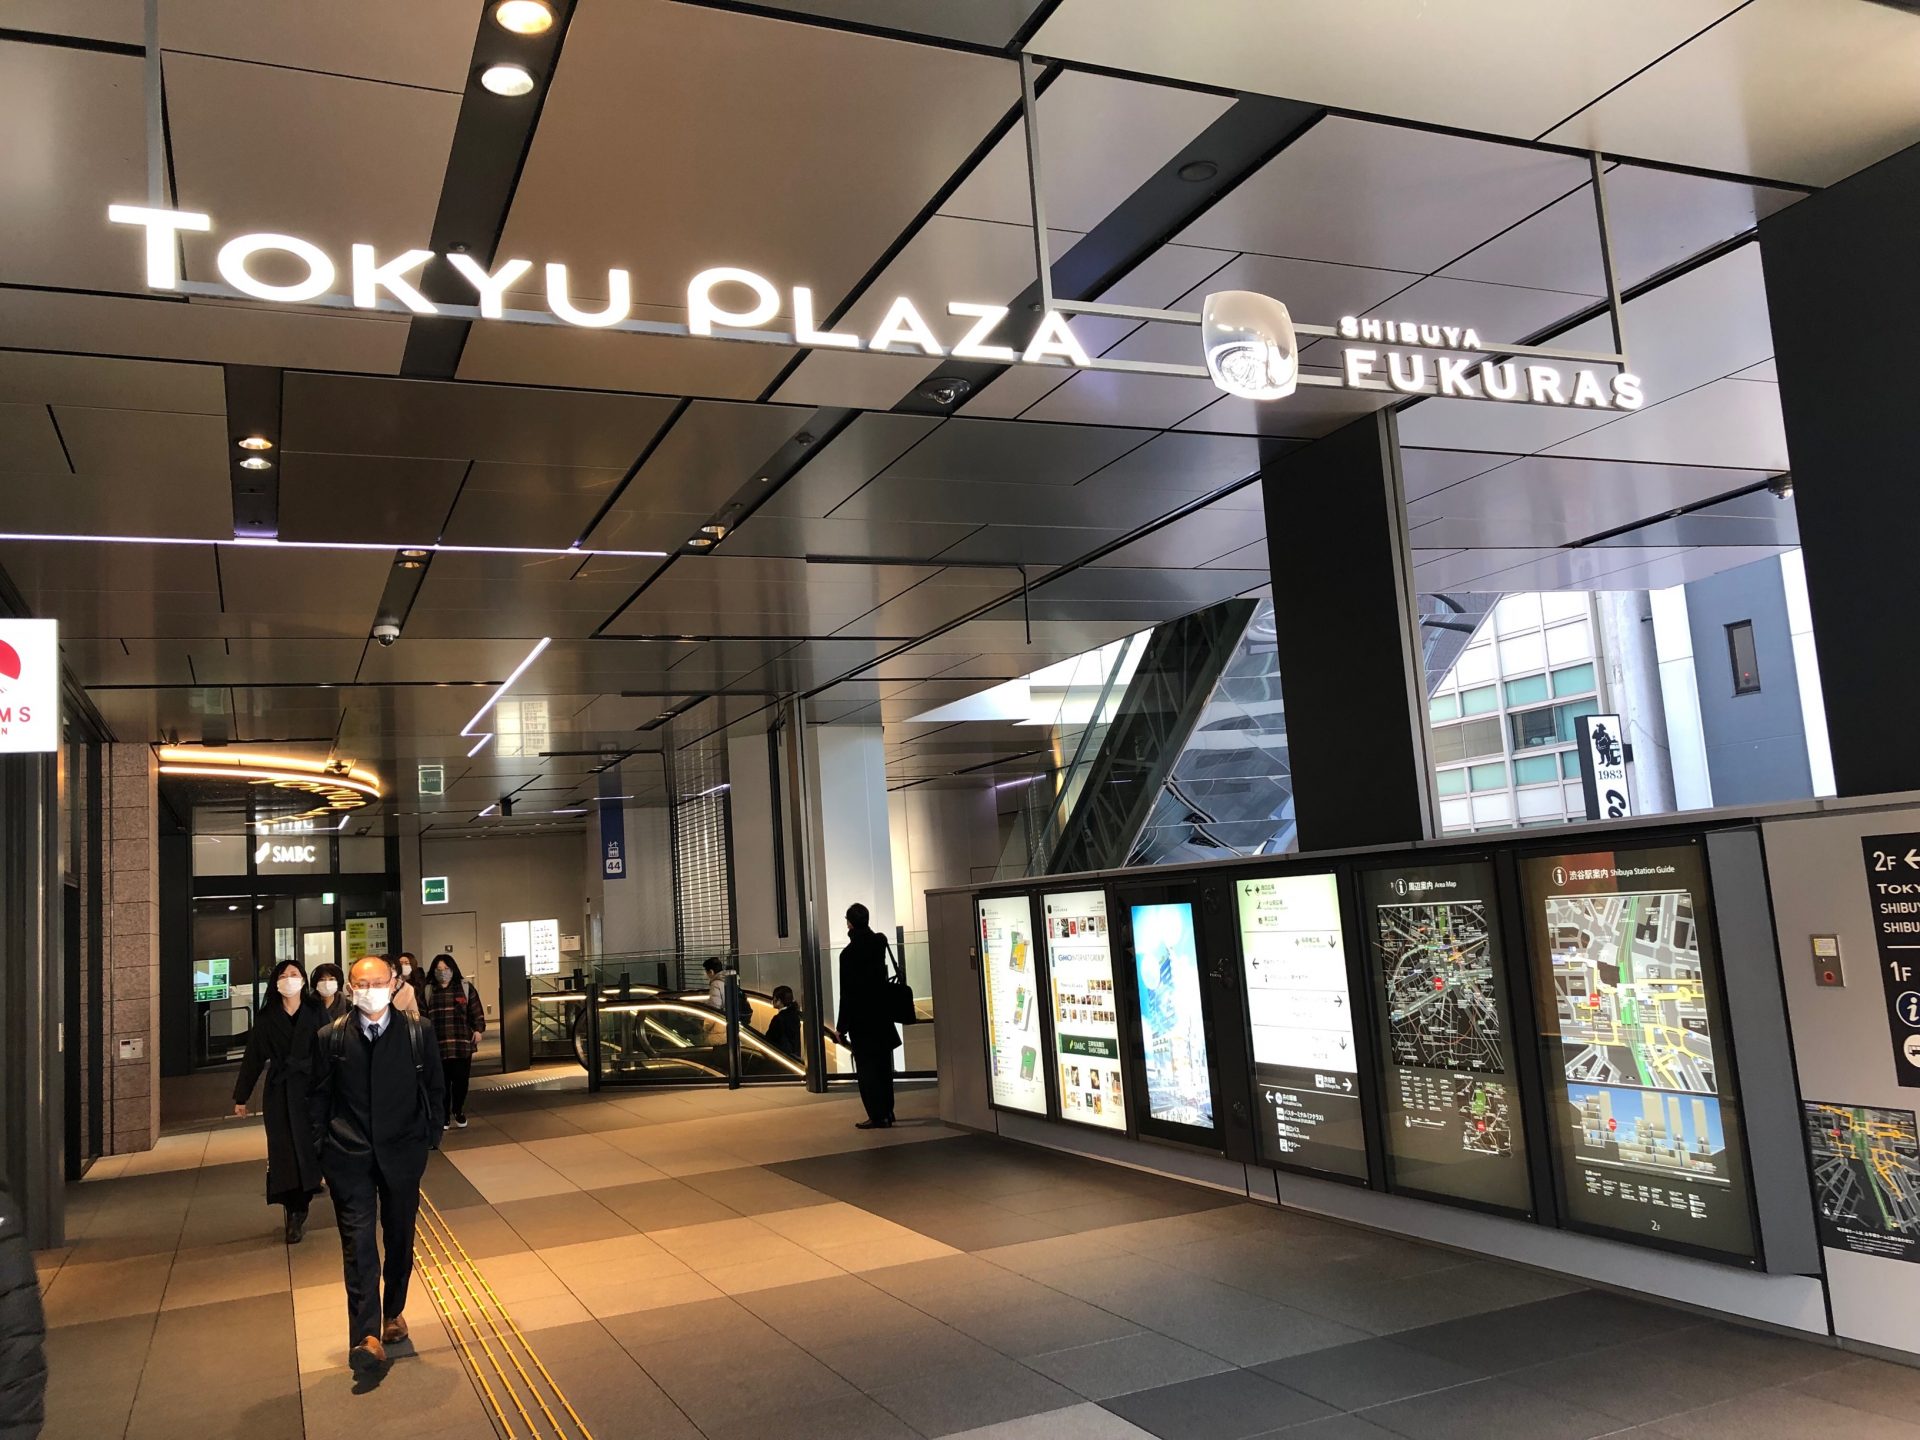 ビジネスエアポート渋谷フクラス 渋谷フクラスビル2F入口より入館